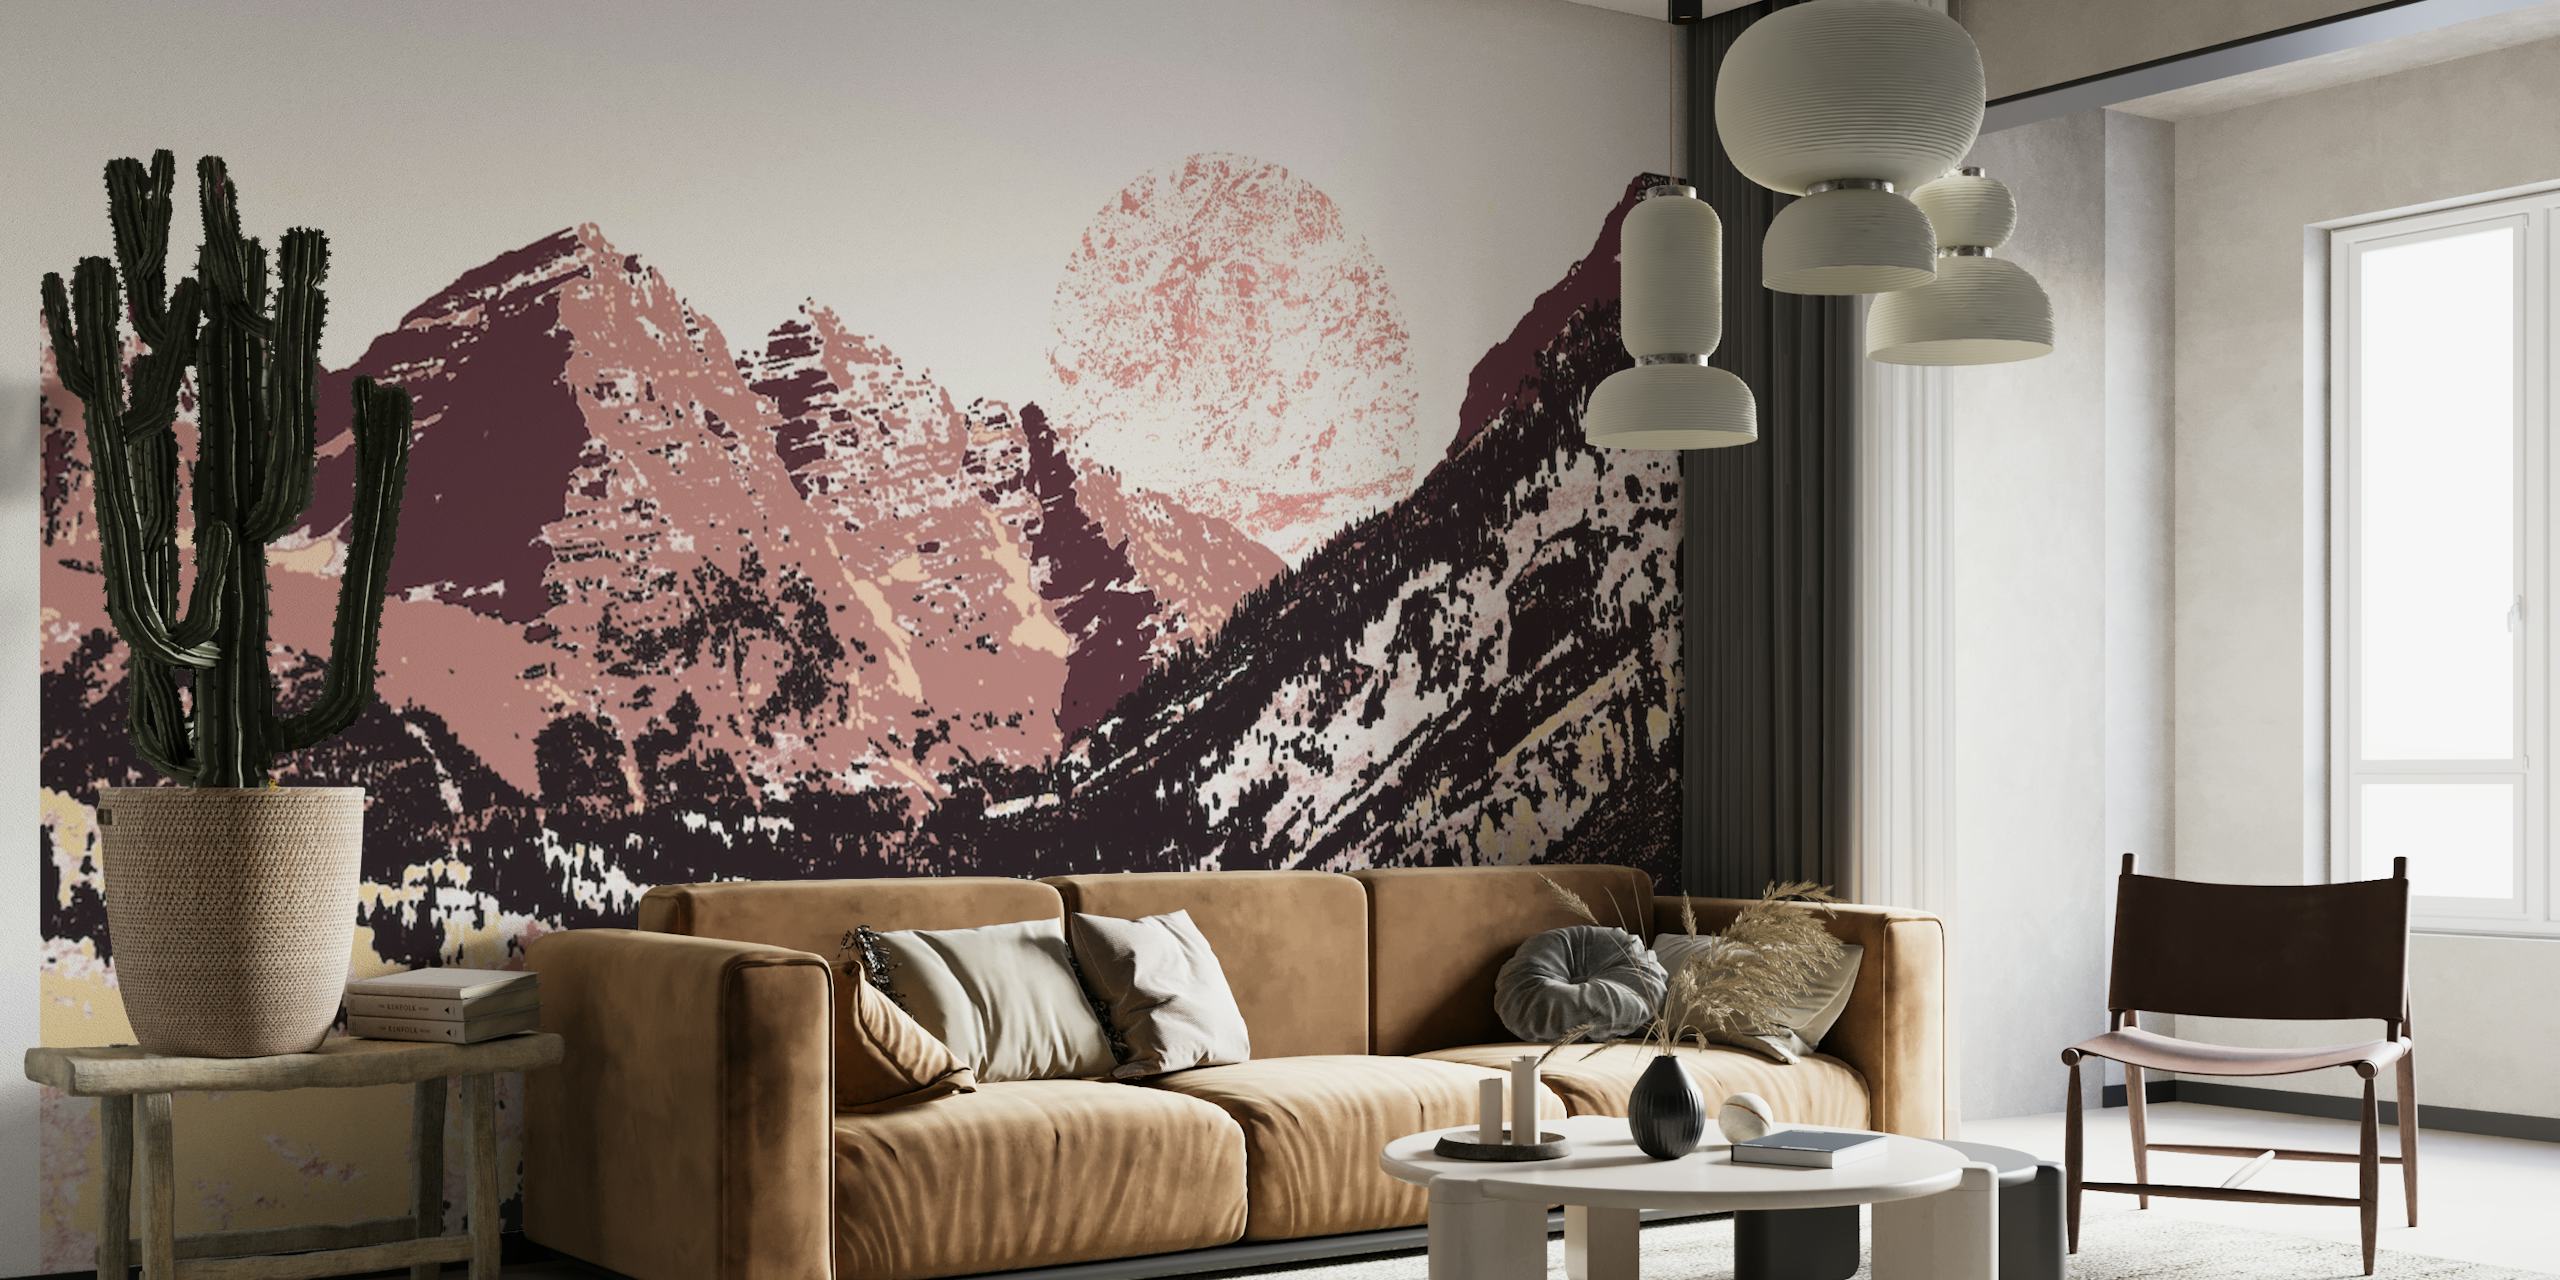 Un murale di una catena montuosa con toni marrone terra e sfumature dell'alba